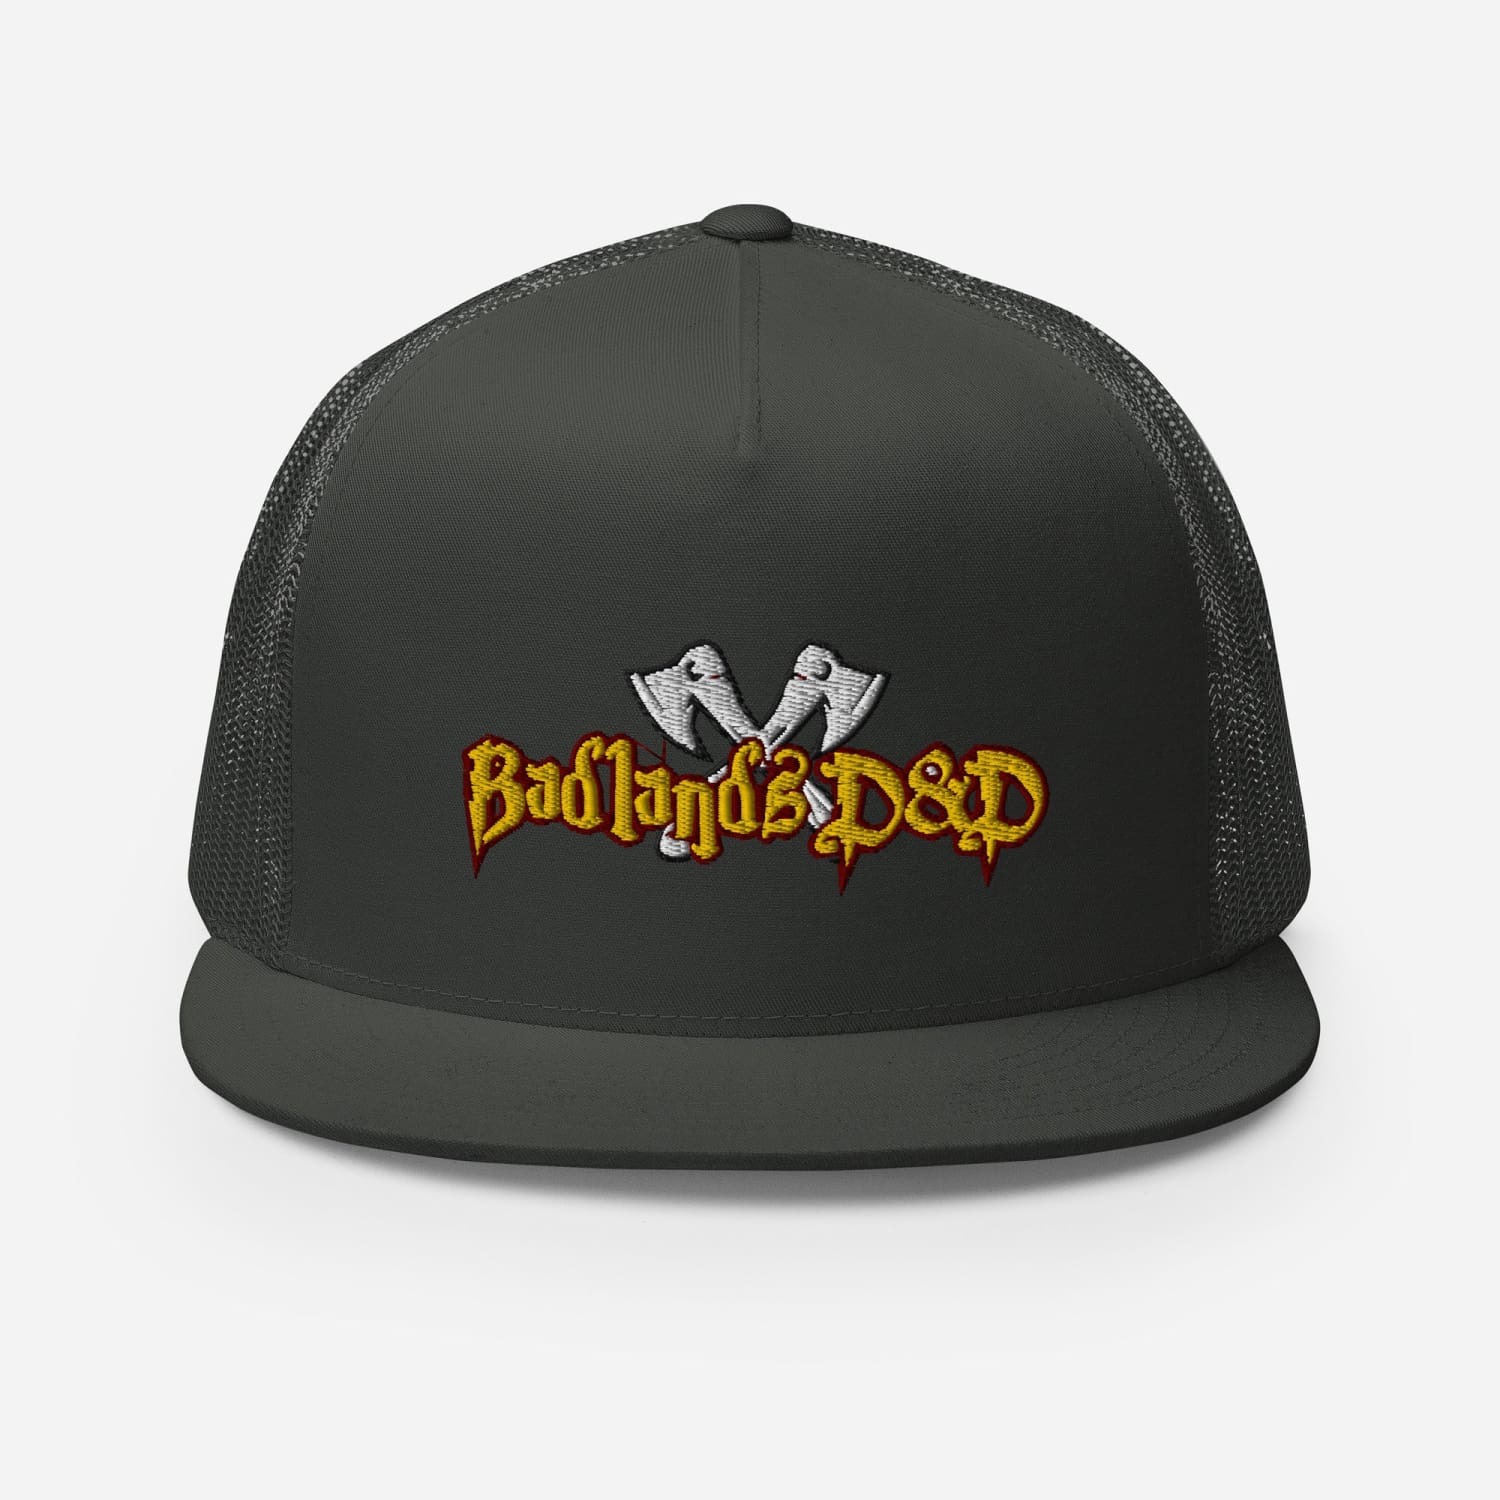 Badlands D&D Logo Classic Trucker Cap - Charcoal